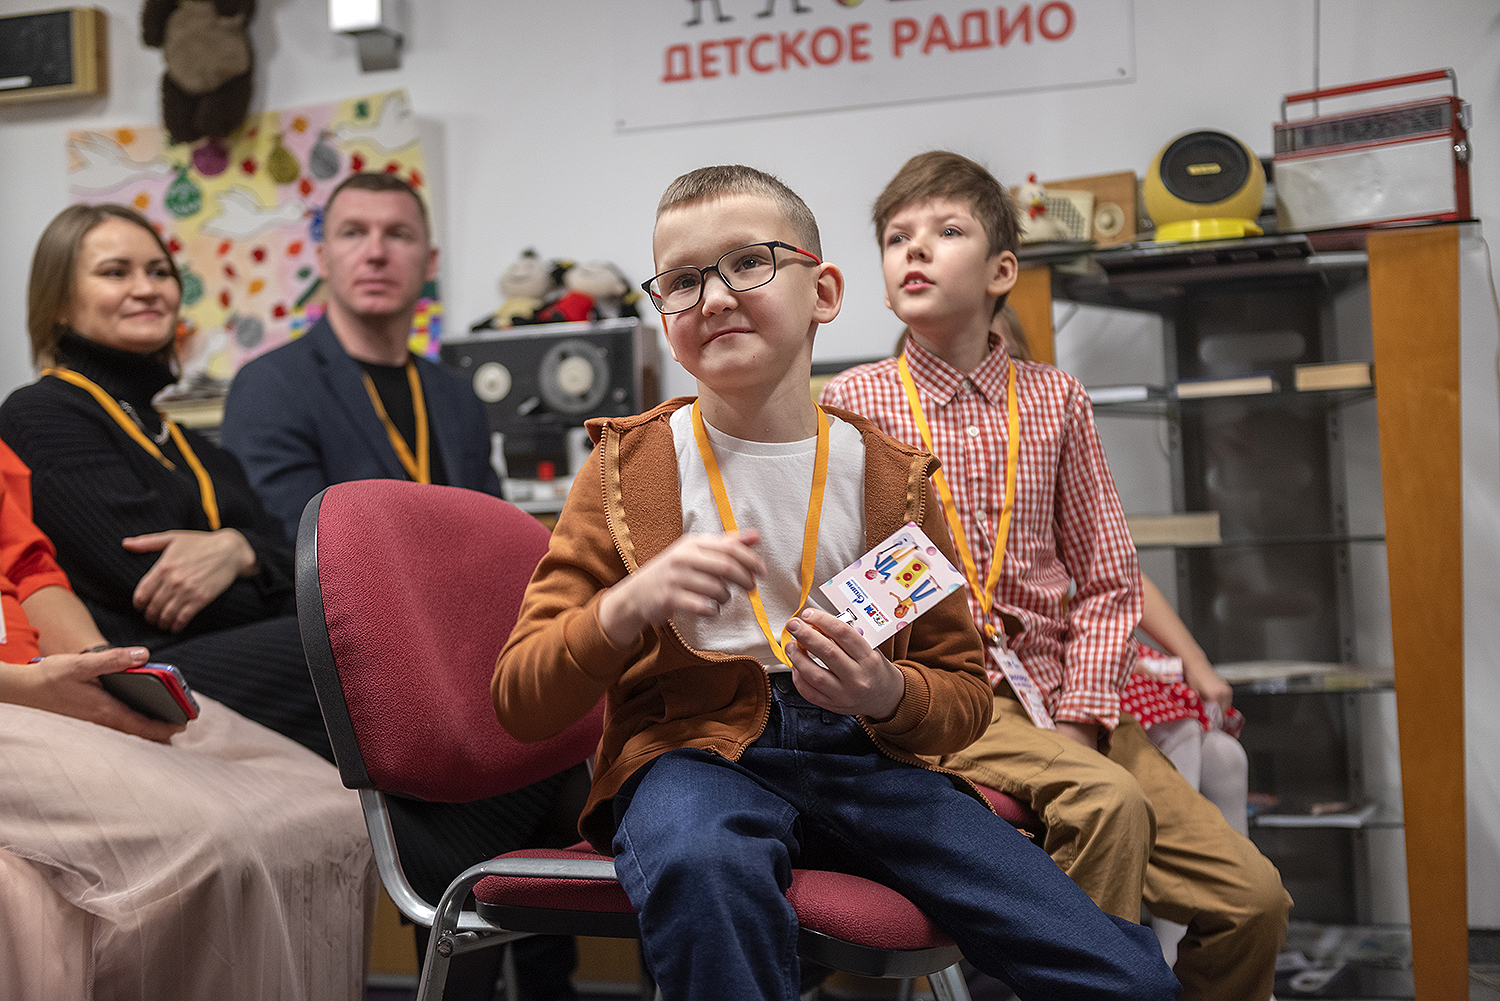 Мечта мальчика из Вологды посетить детскую радиостанцию исполнилась благодаря акции «Елка желаний»